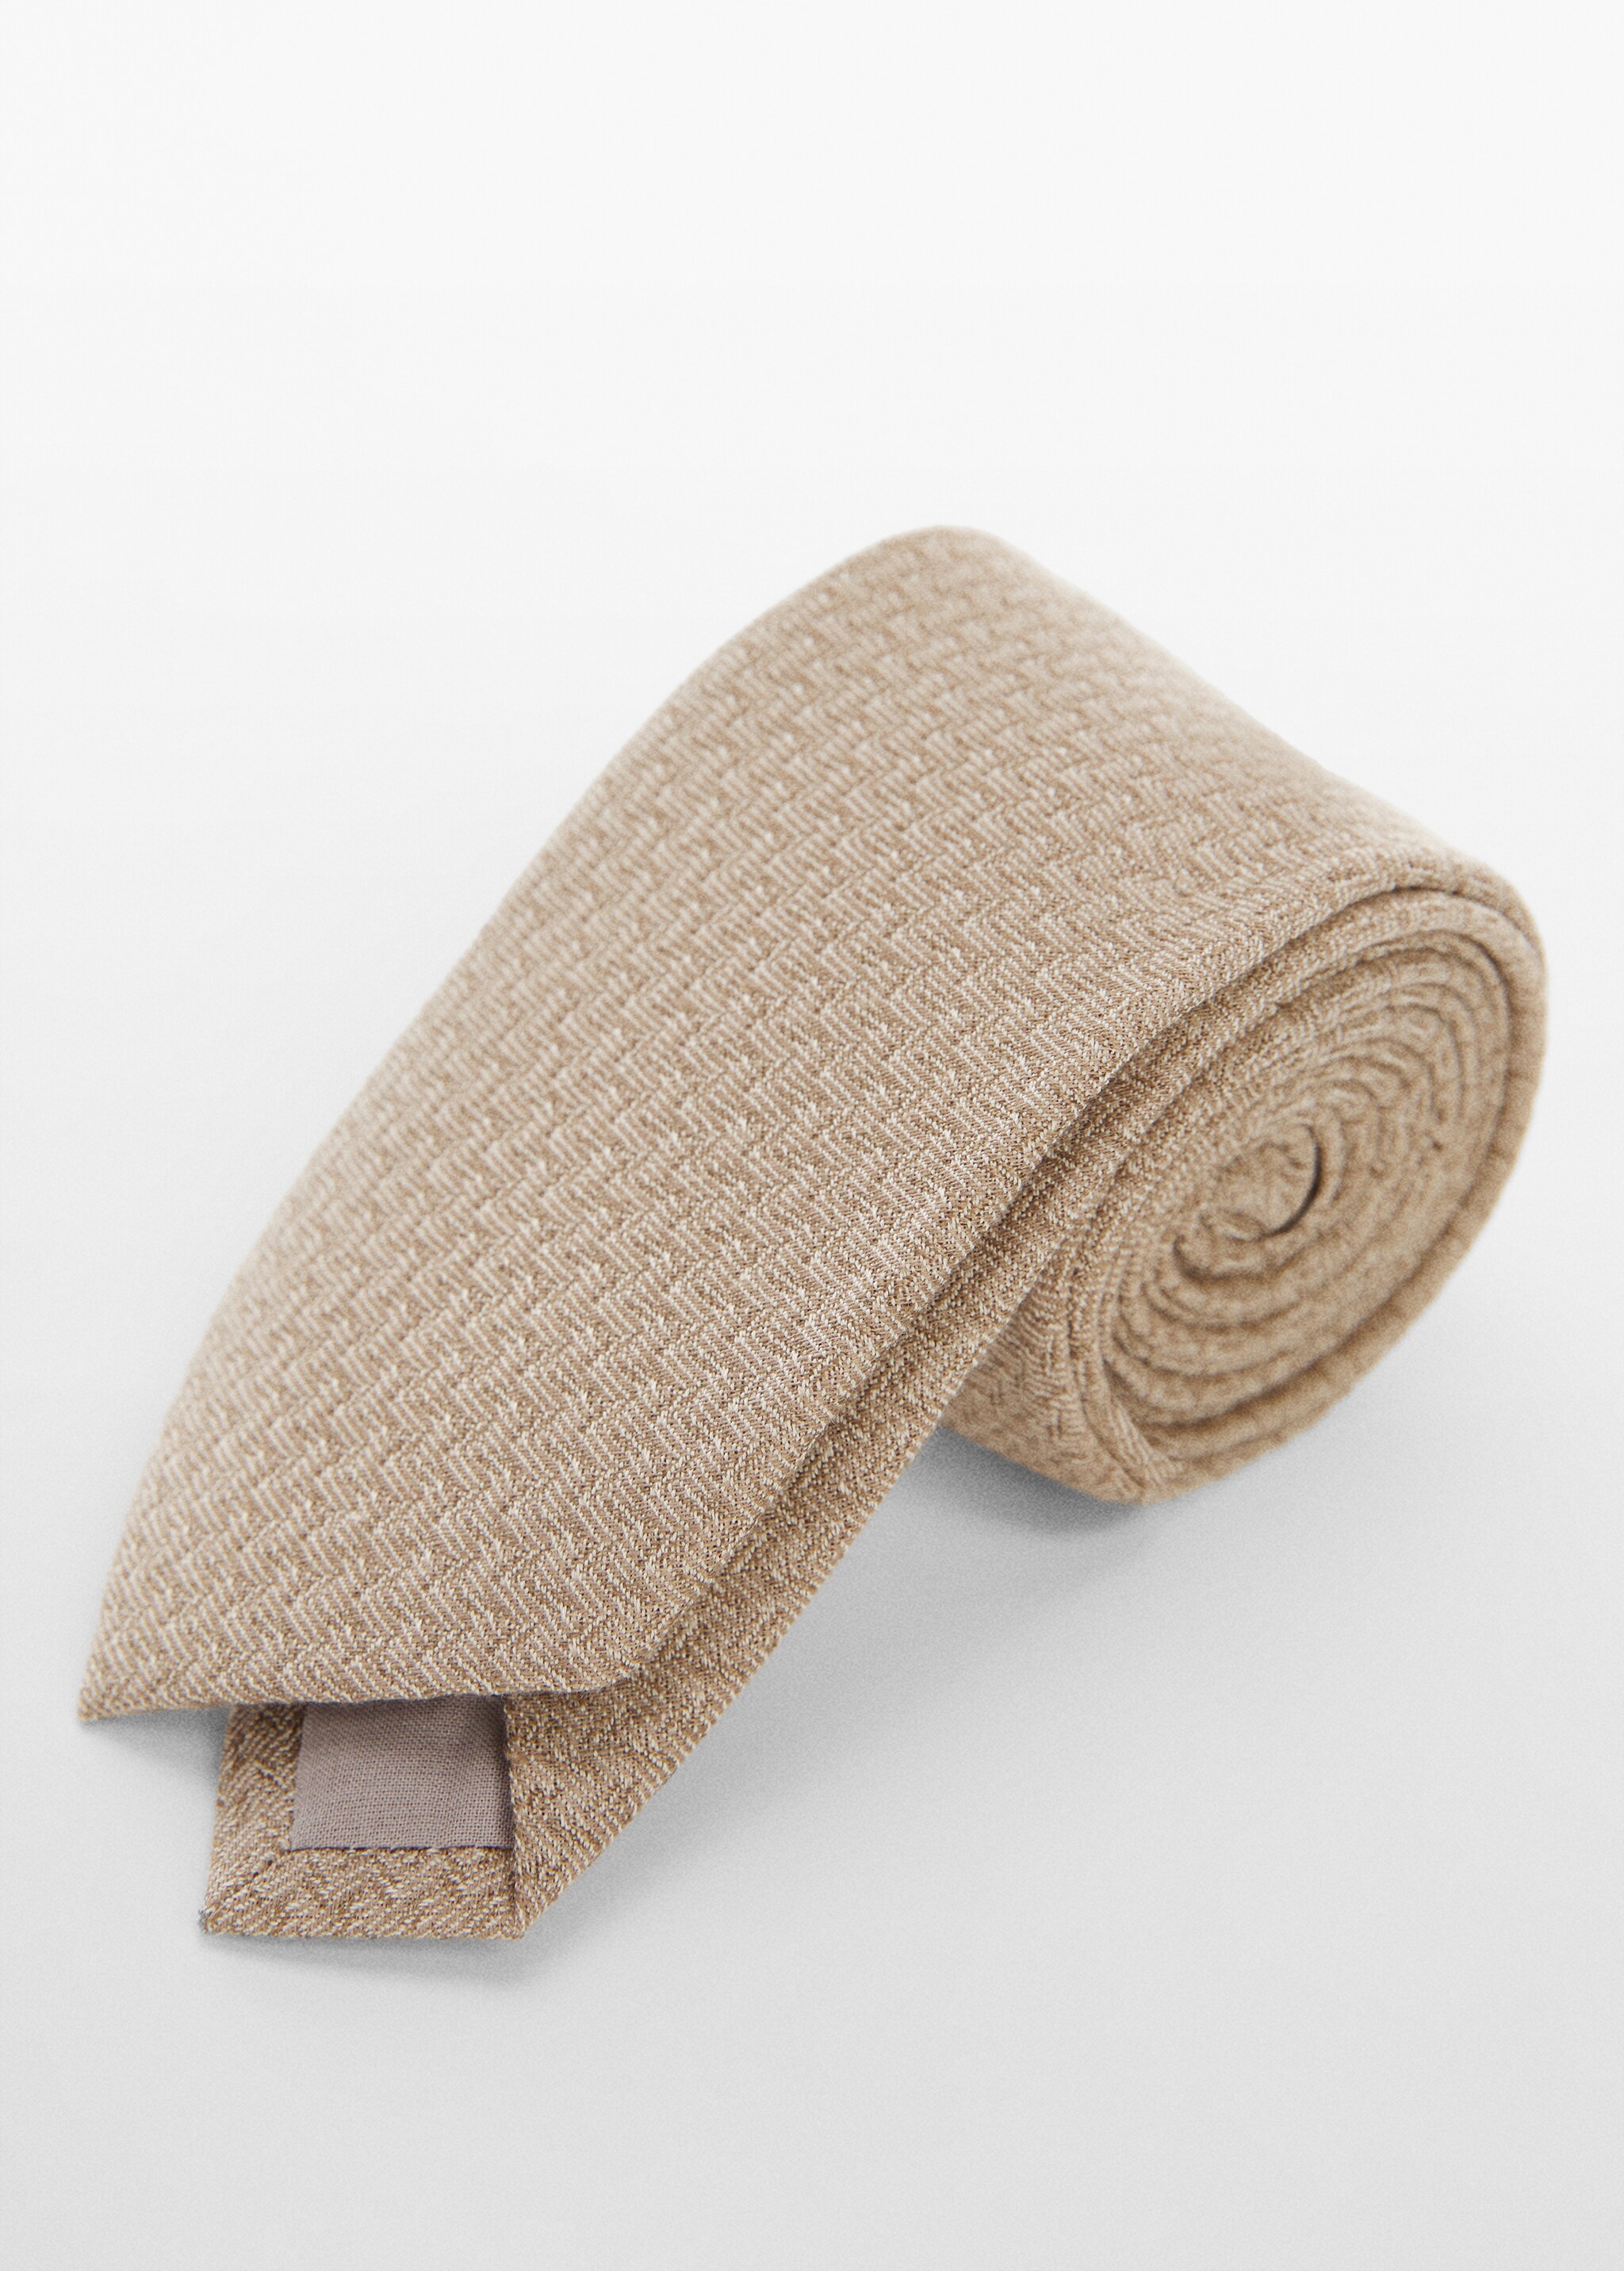 Corbata estructura algodón y lino - Plano medio